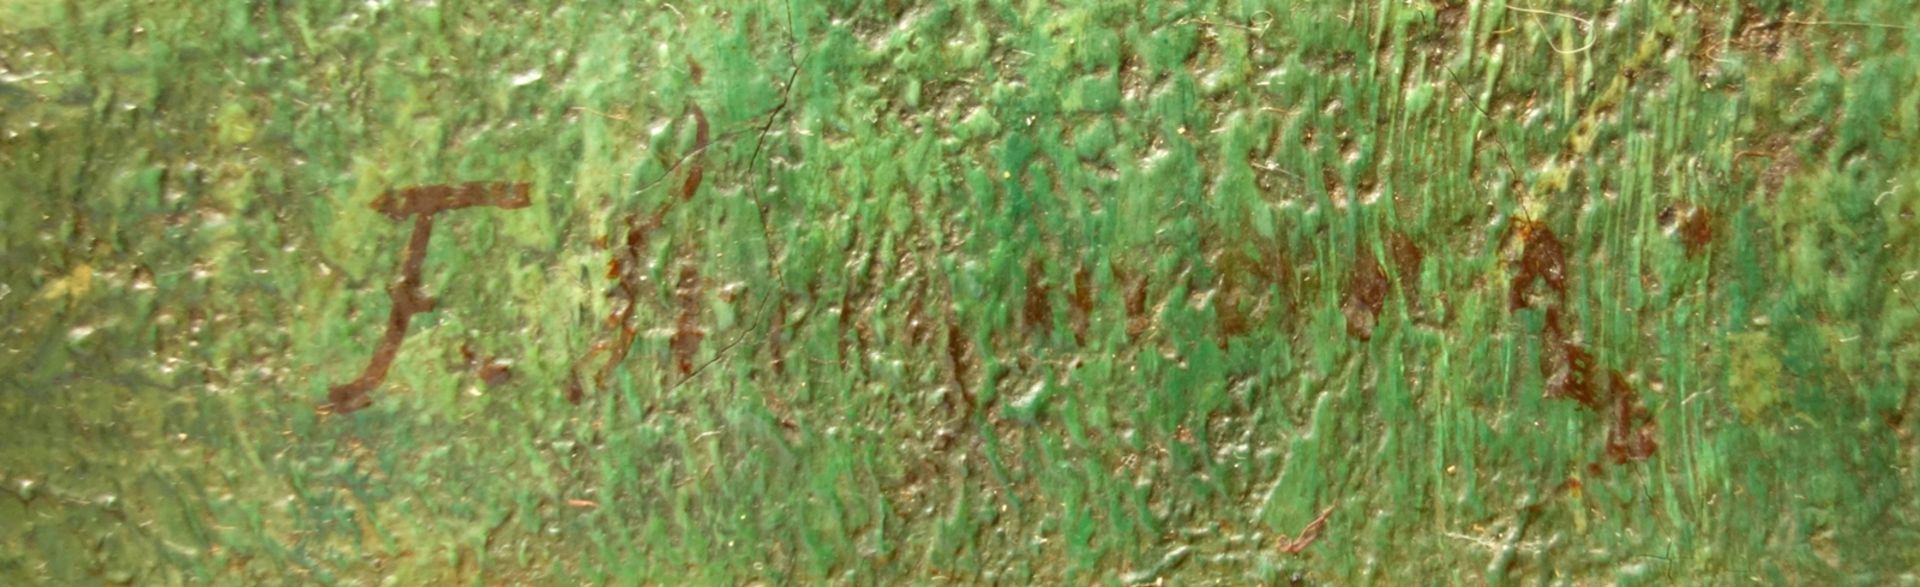 undeutlich signiert, "Waldweg mit Reh", um 1910, Öl/Leinwand, unten links signiert, HB 38*27,5cm, - Bild 2 aus 2